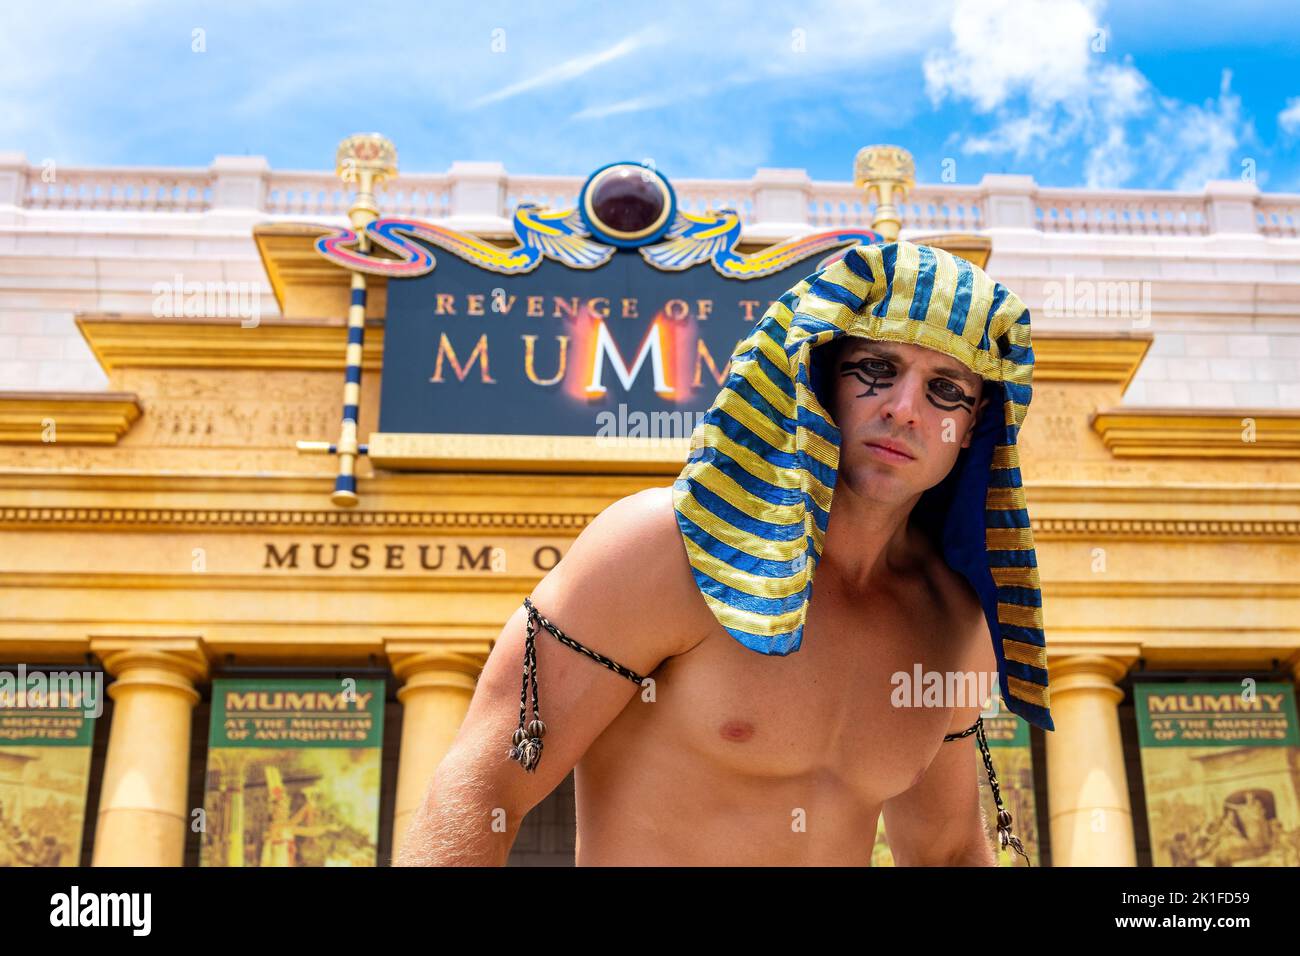 Ein männlicher Entertainer, der vor der Attraktion „Rache der Mumie“ auftrat. Das Gebäude hat ein Schild mit der Aufschrift Museum of Antiquities. Stockfoto